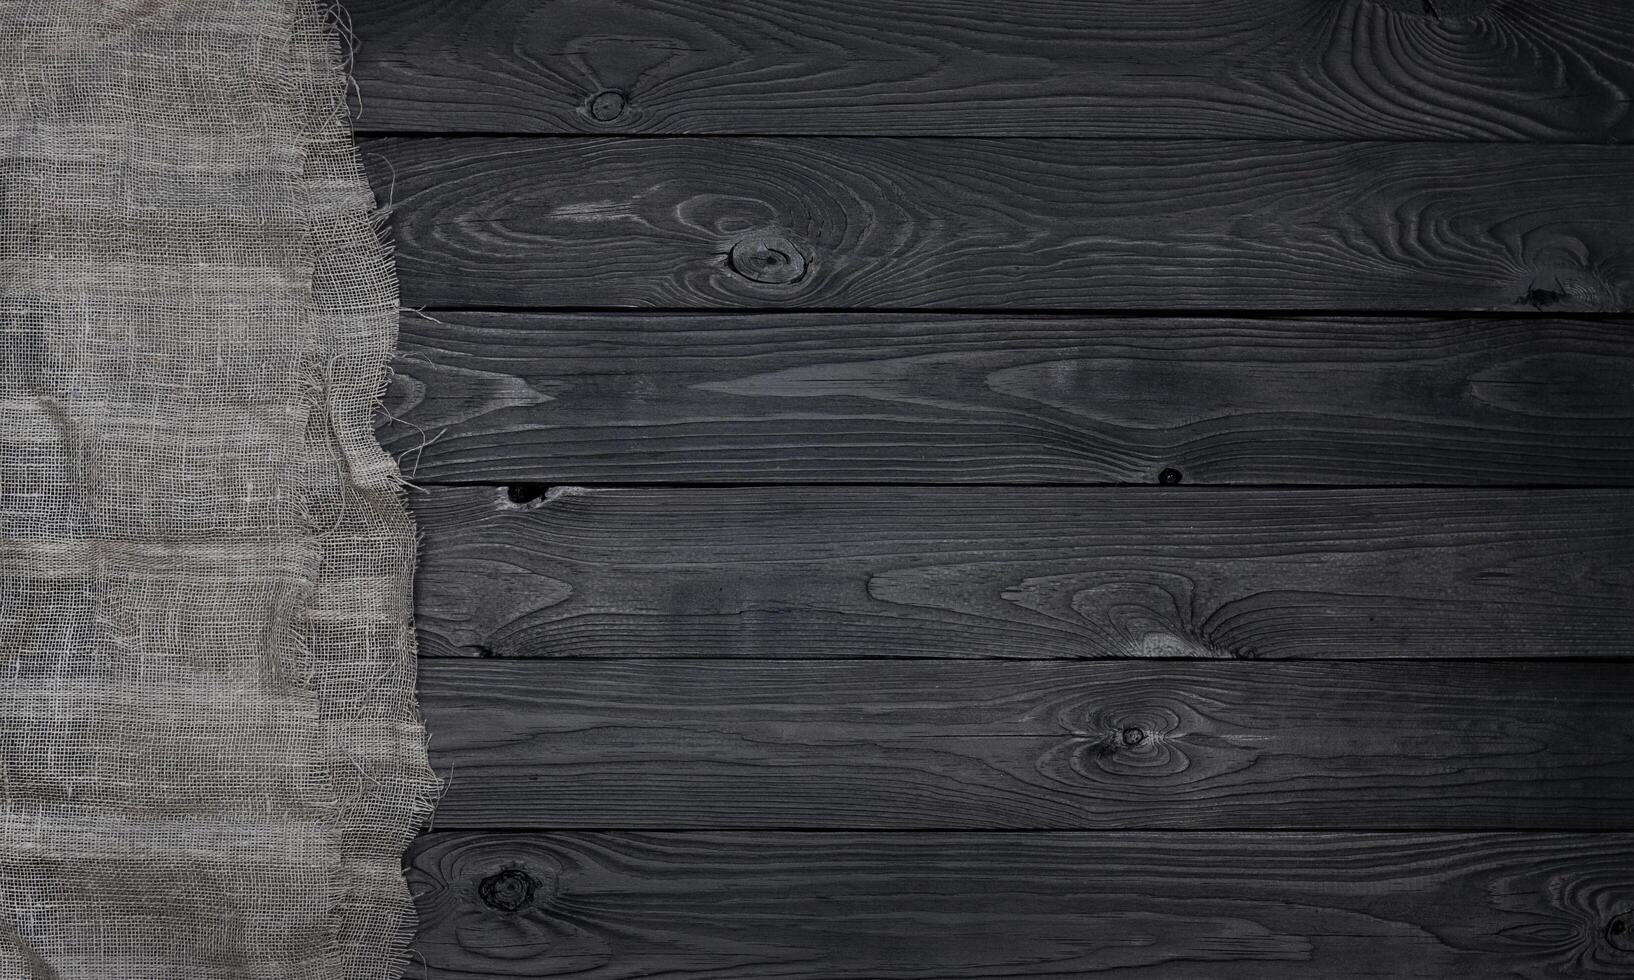 vieux toile de jute en tissu serviette de table sur noir en bois arrière-plan, Haut vue photo